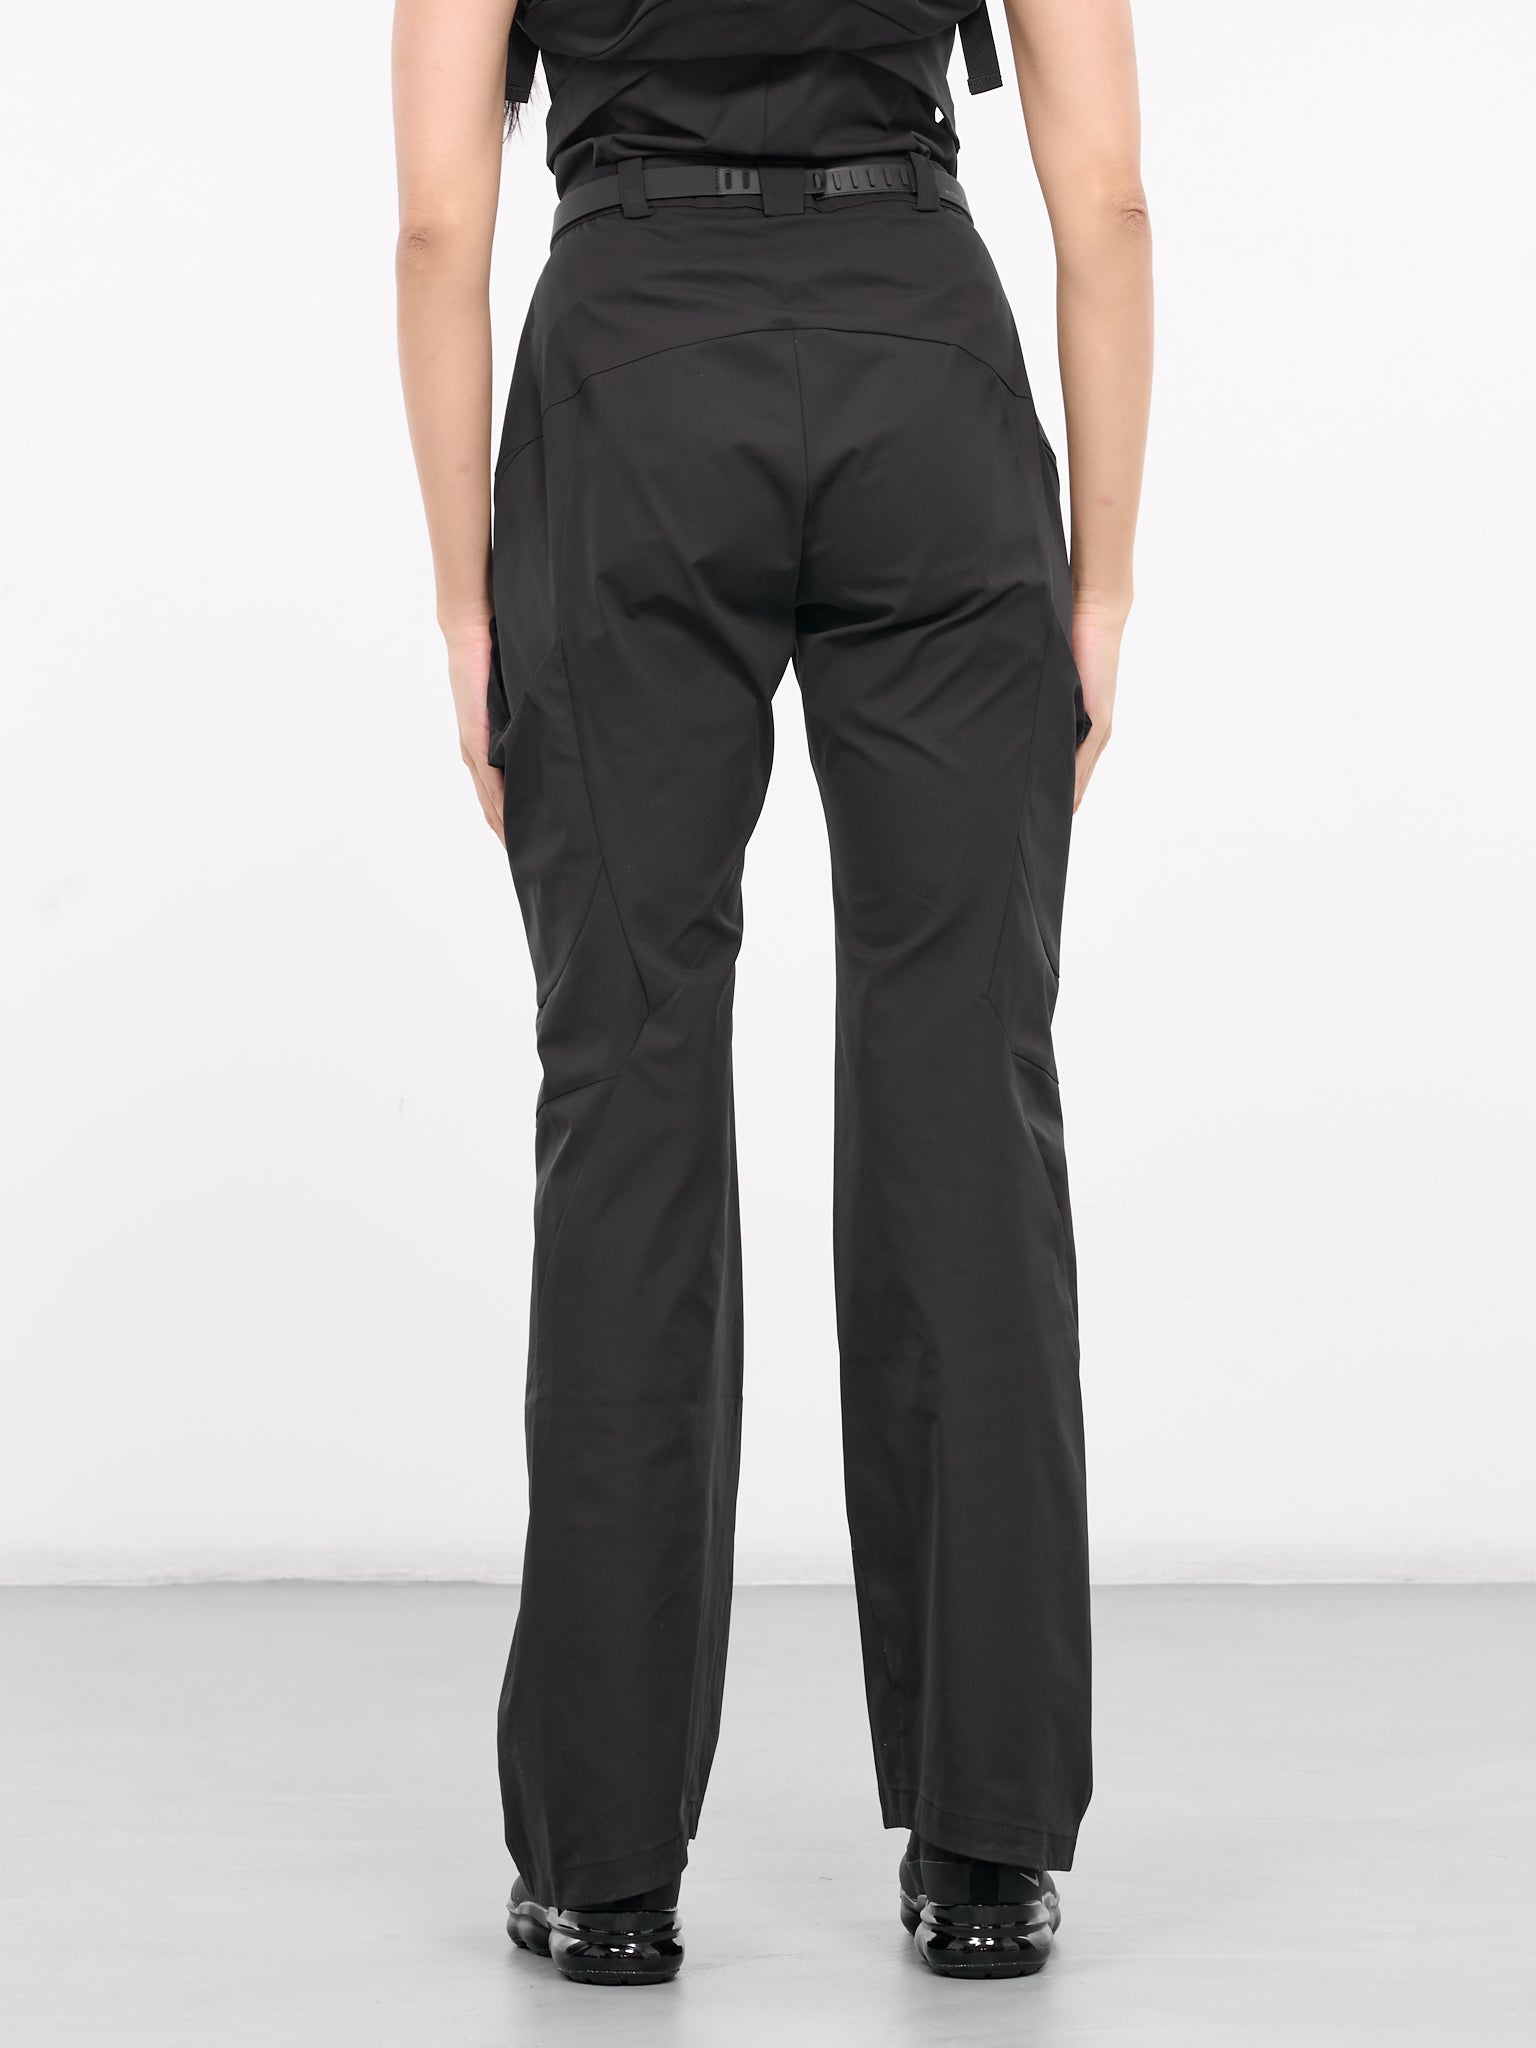 Belted Pocket Pants (PT6K-S24-BLACK)